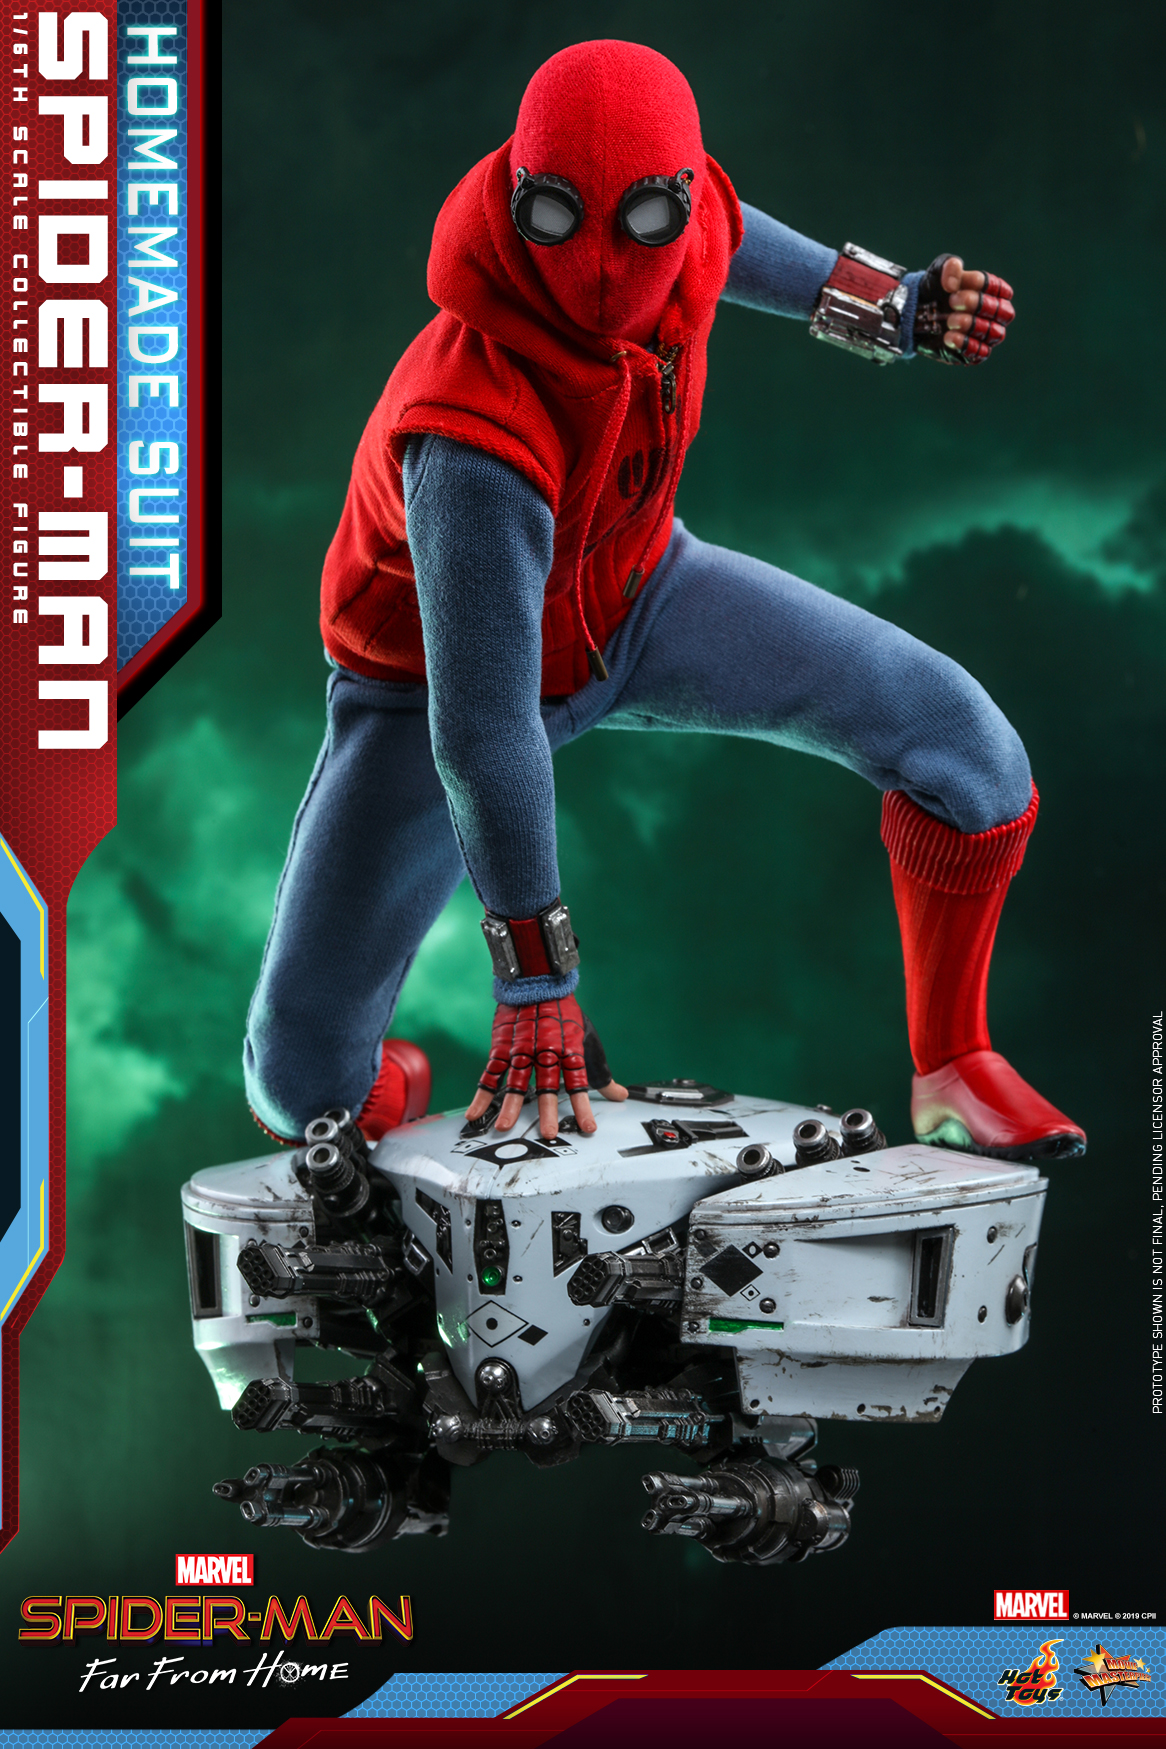 Hot Toys 推出《Spider-Man: Far From Home》中 Spider-Man 自制战衣 1:6 珍藏人偶